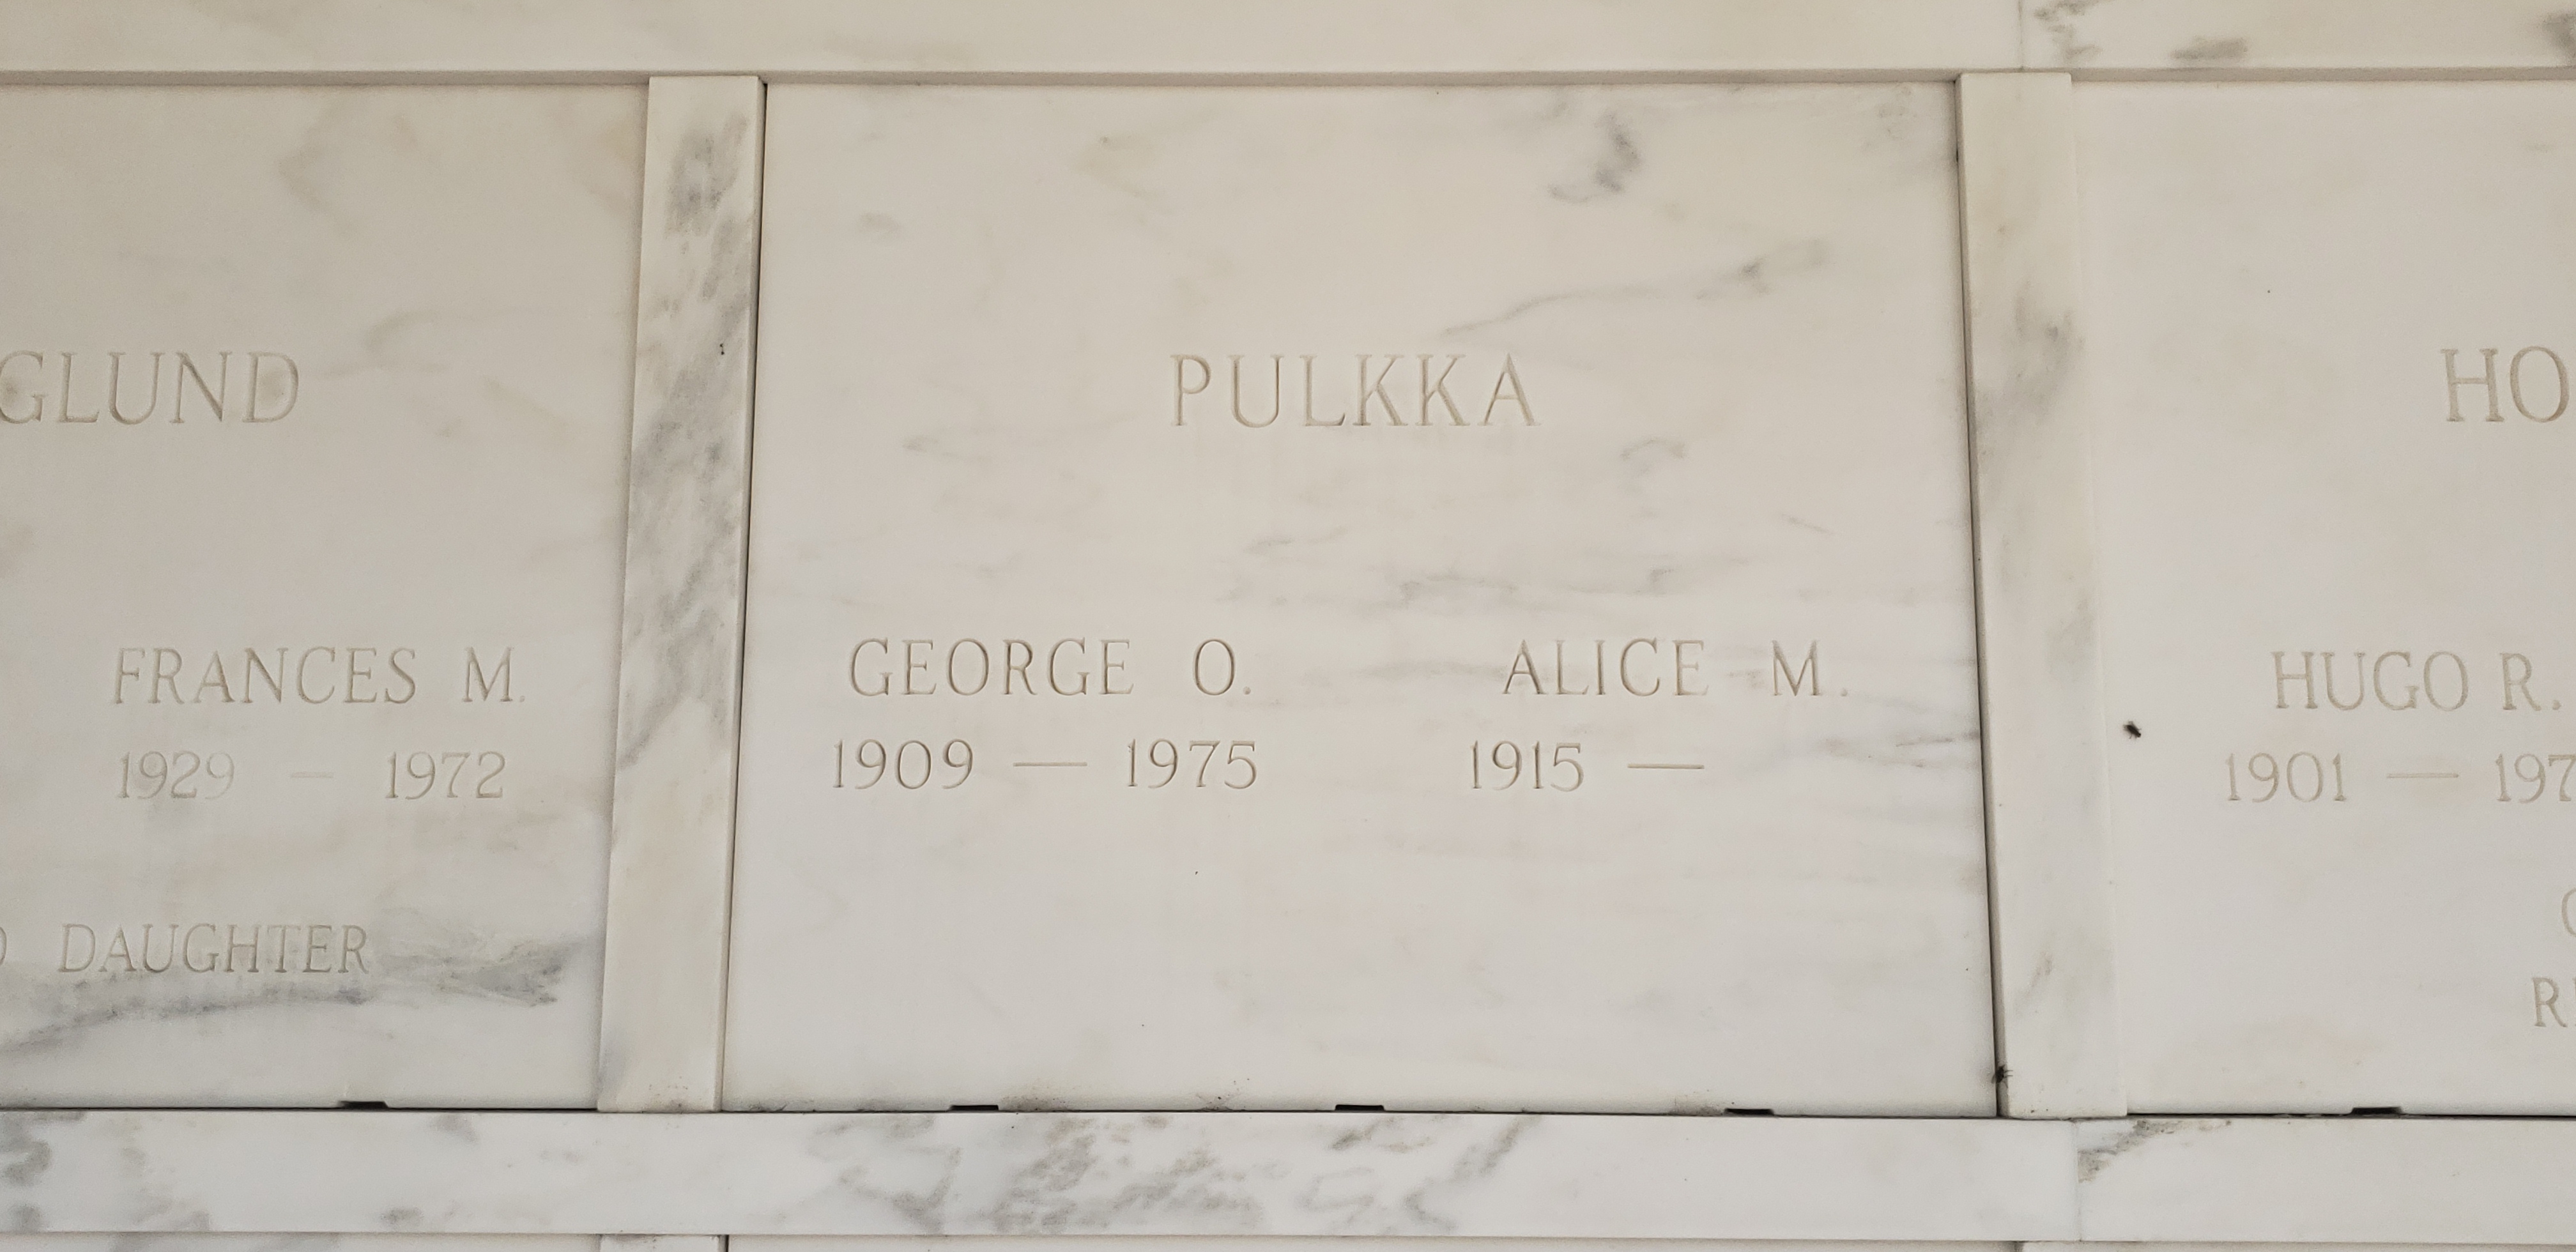 George O Pulkka